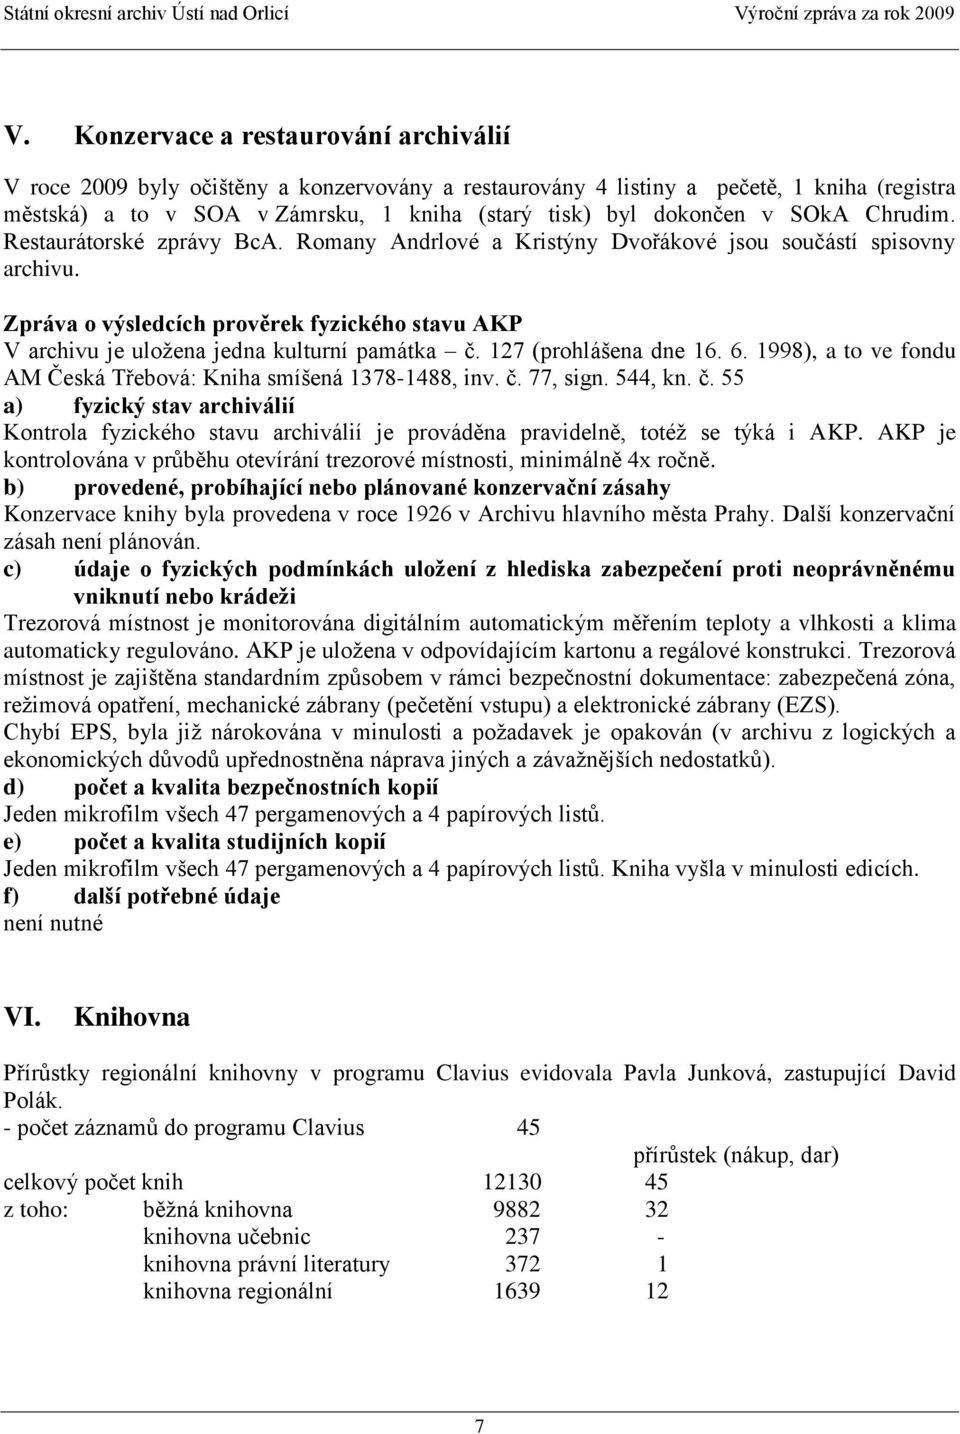 Zpráva o výsledcích prověrek fyzického stavu AKP V archivu je uloţena jedna kulturní památka č. 127 (prohlášena dne 16. 6. 1998), a to ve fondu AM Česká Třebová: Kniha smíšená 1378-1488, inv. č. 77, sign.